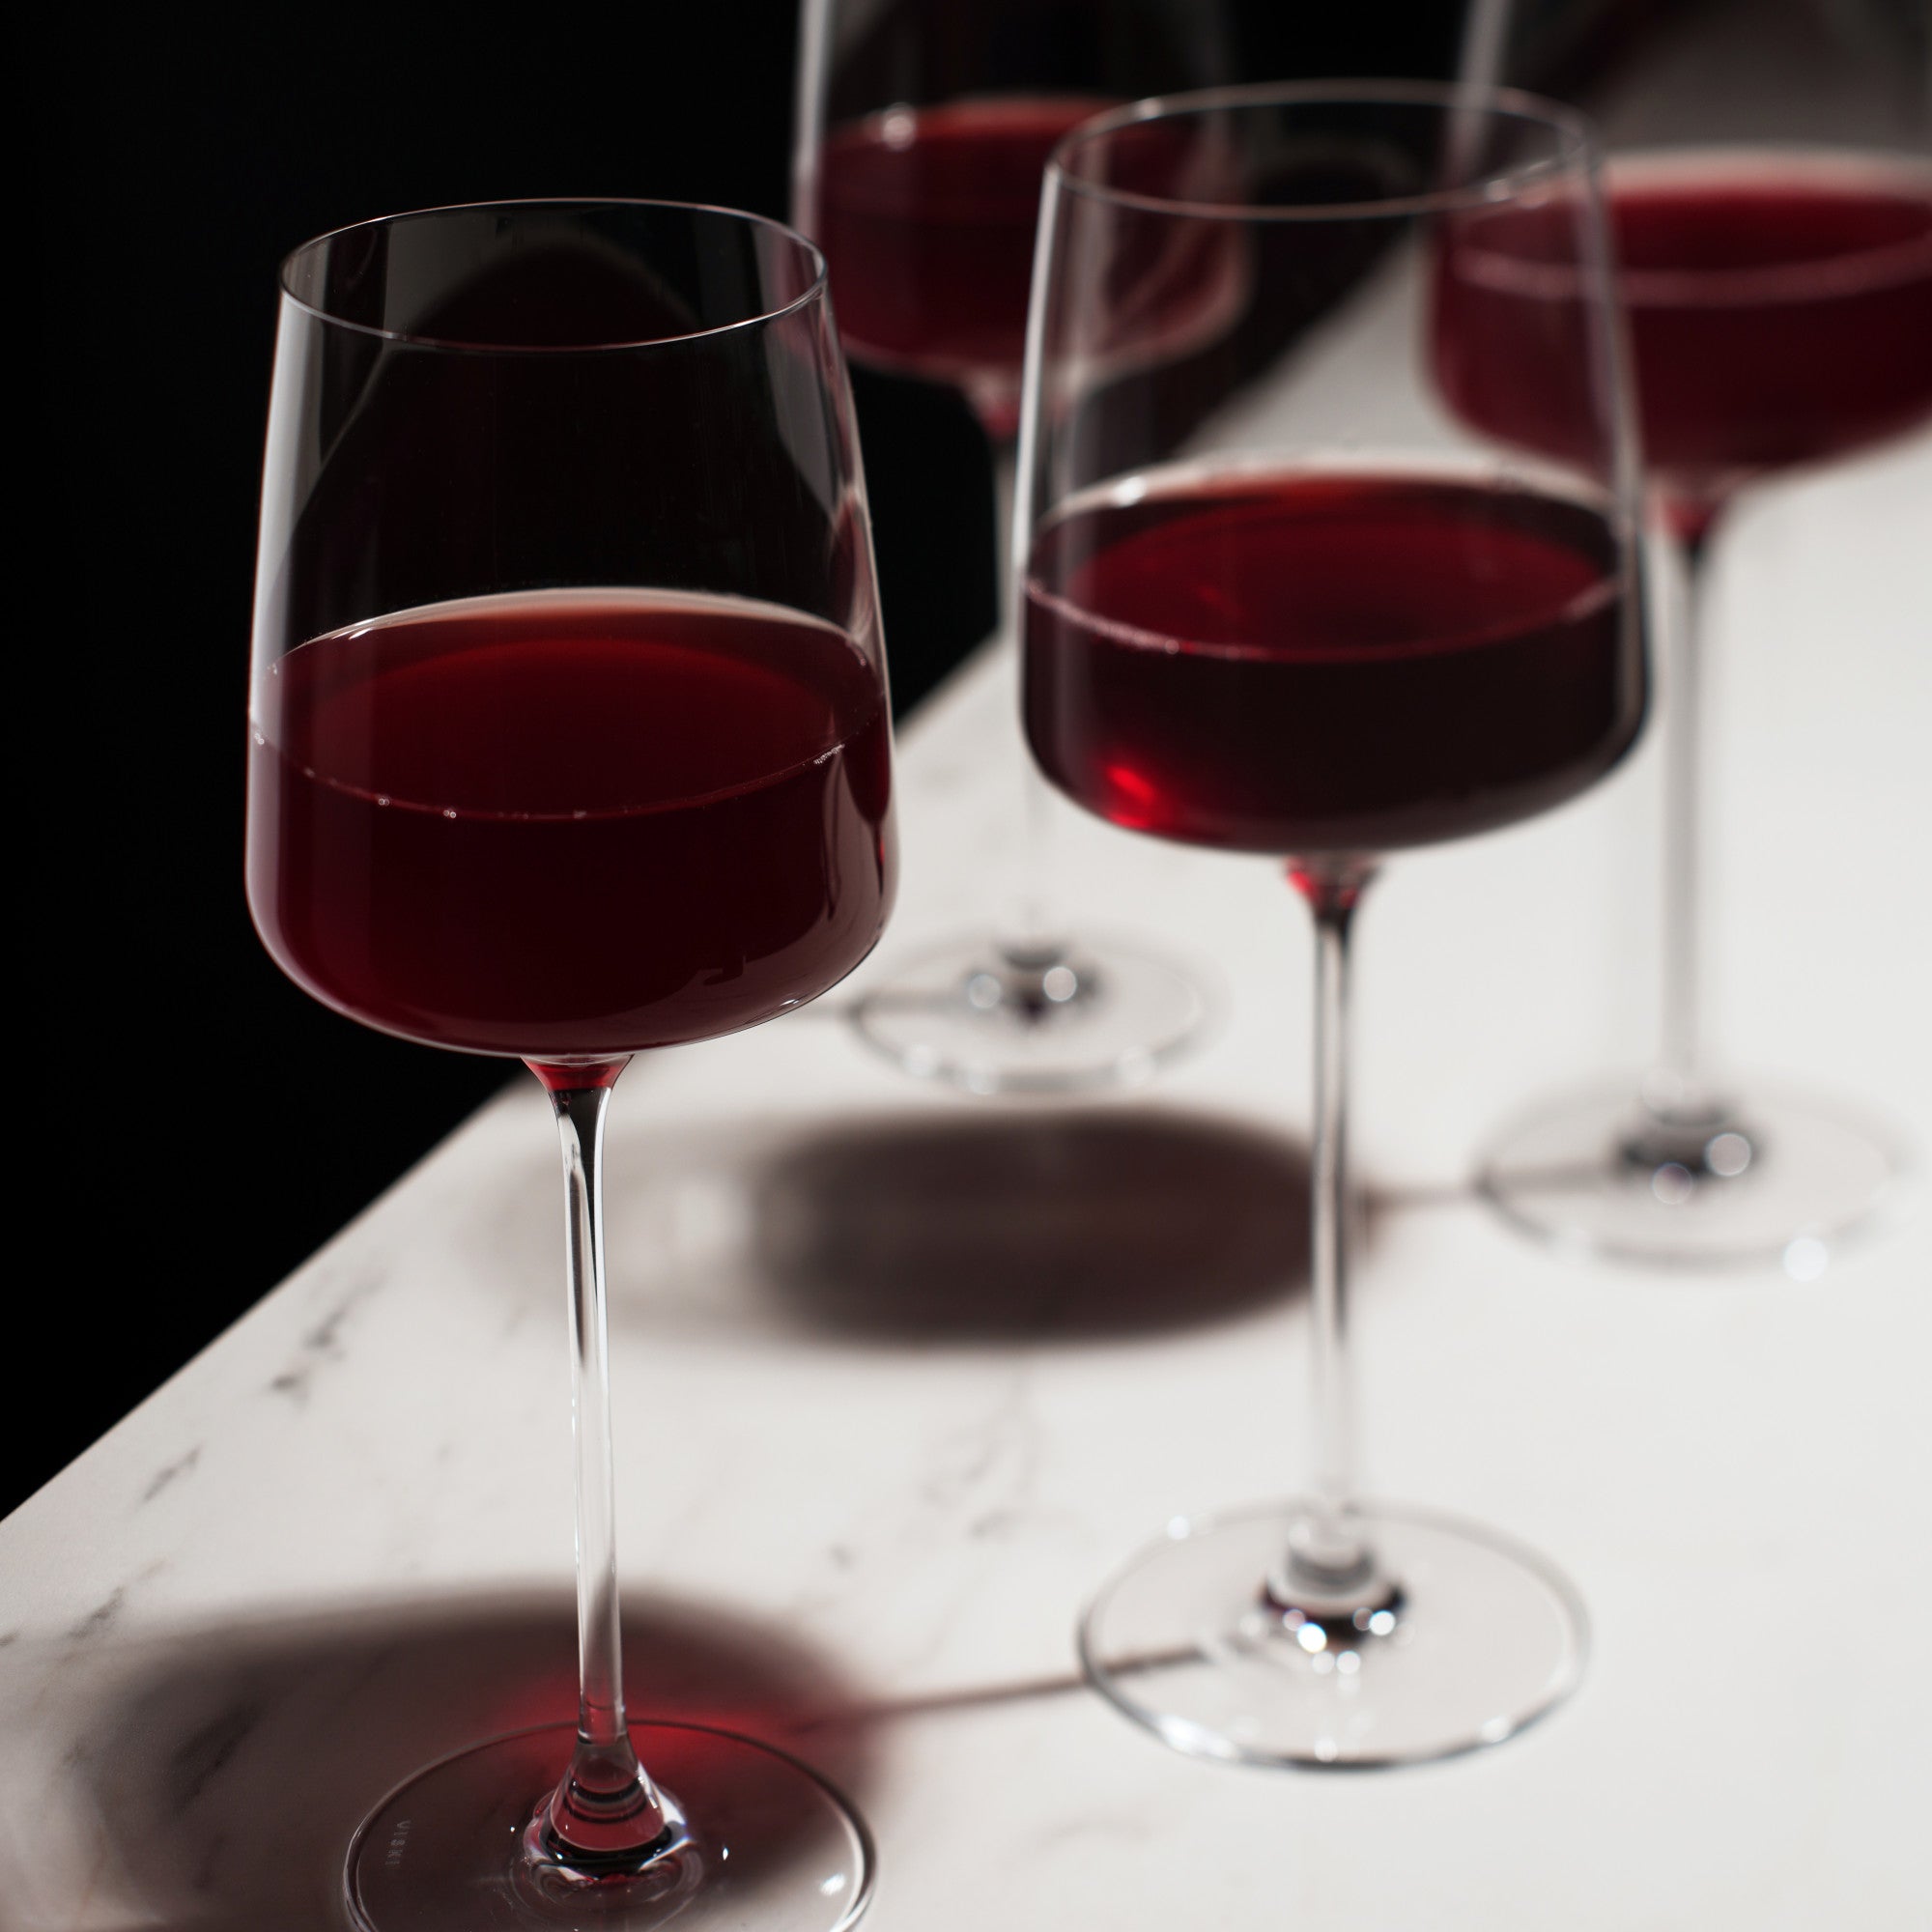 Reserve Julien Crystal Bordeaux Glasses By Viski (set of 4)